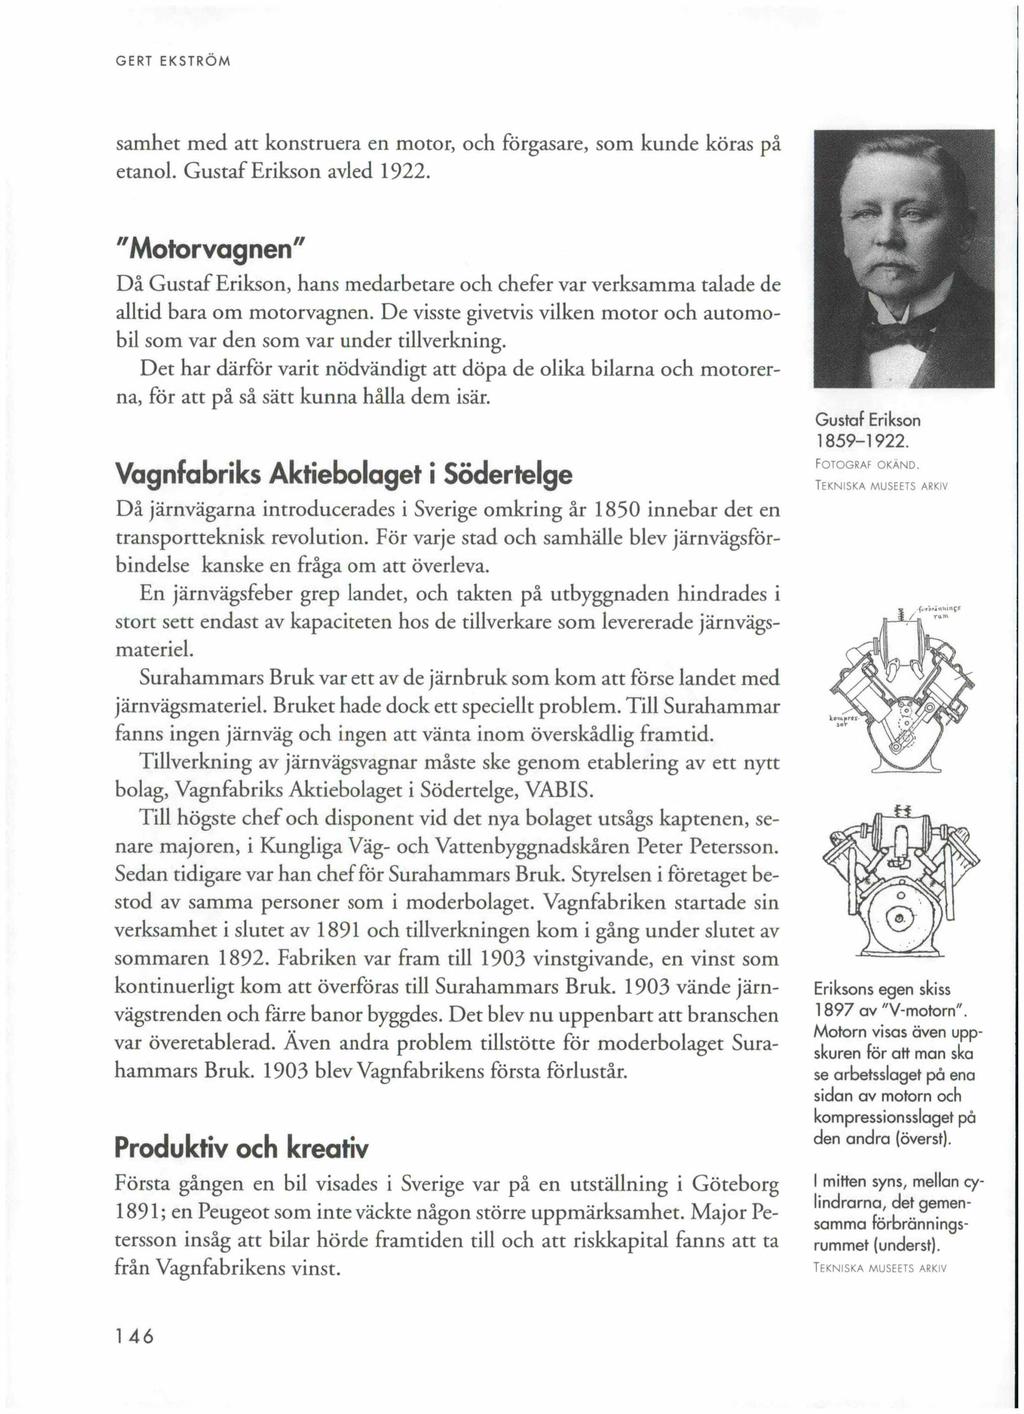 GERT EKSTRÖM samhet med att konstruera en motor, och förgasare, som kunde köras på etanol. Gustaf Erikson avled 1922.